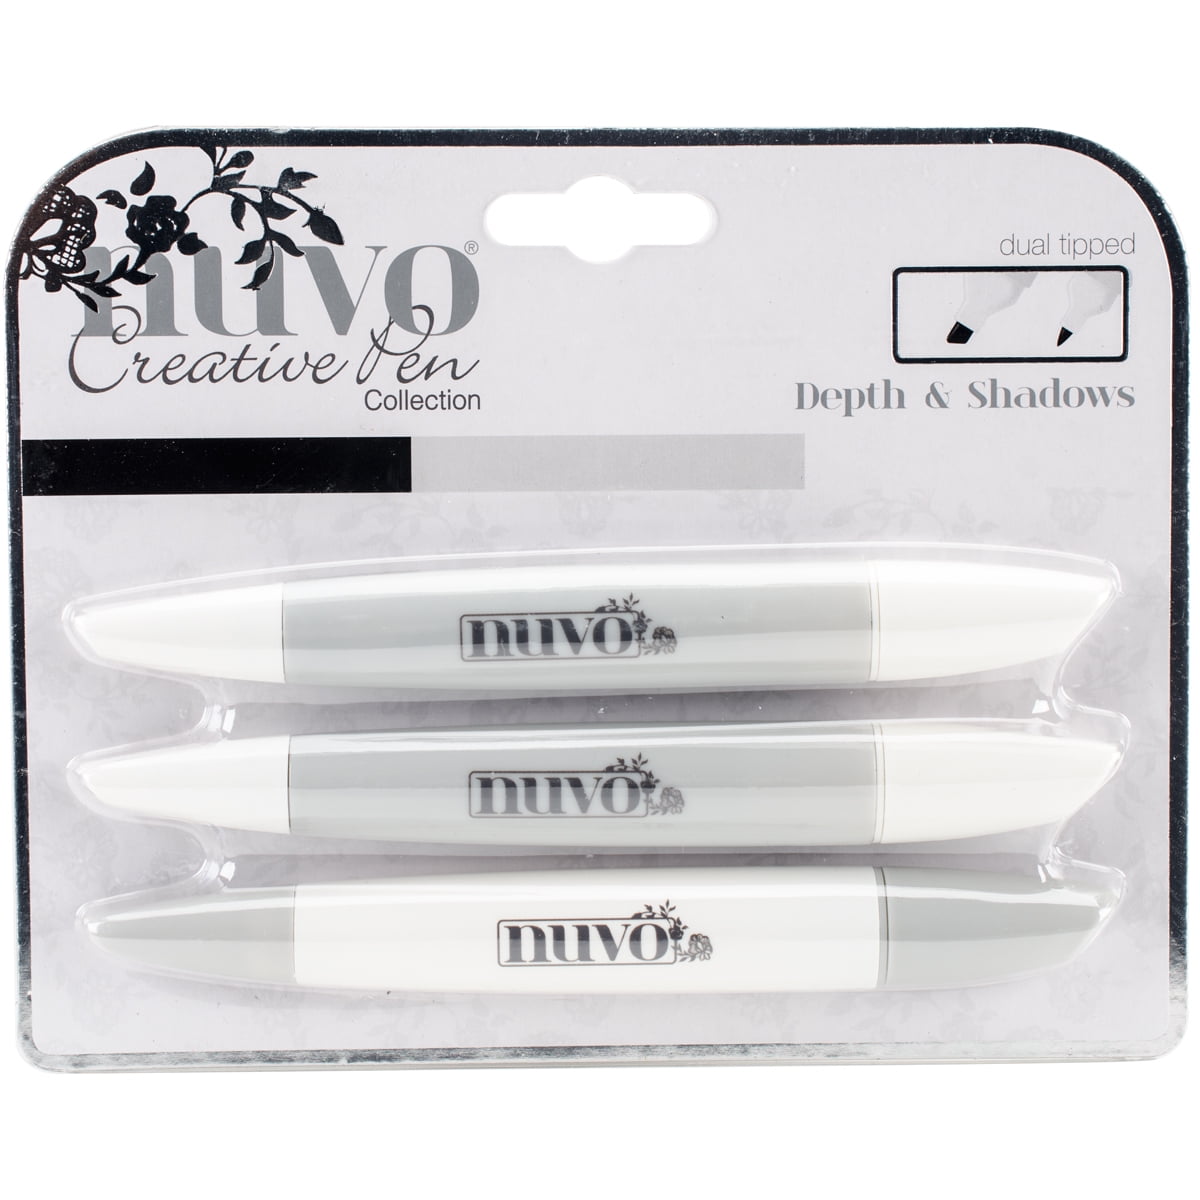 Nuvo Creative Pen Collection Depth & Shadows